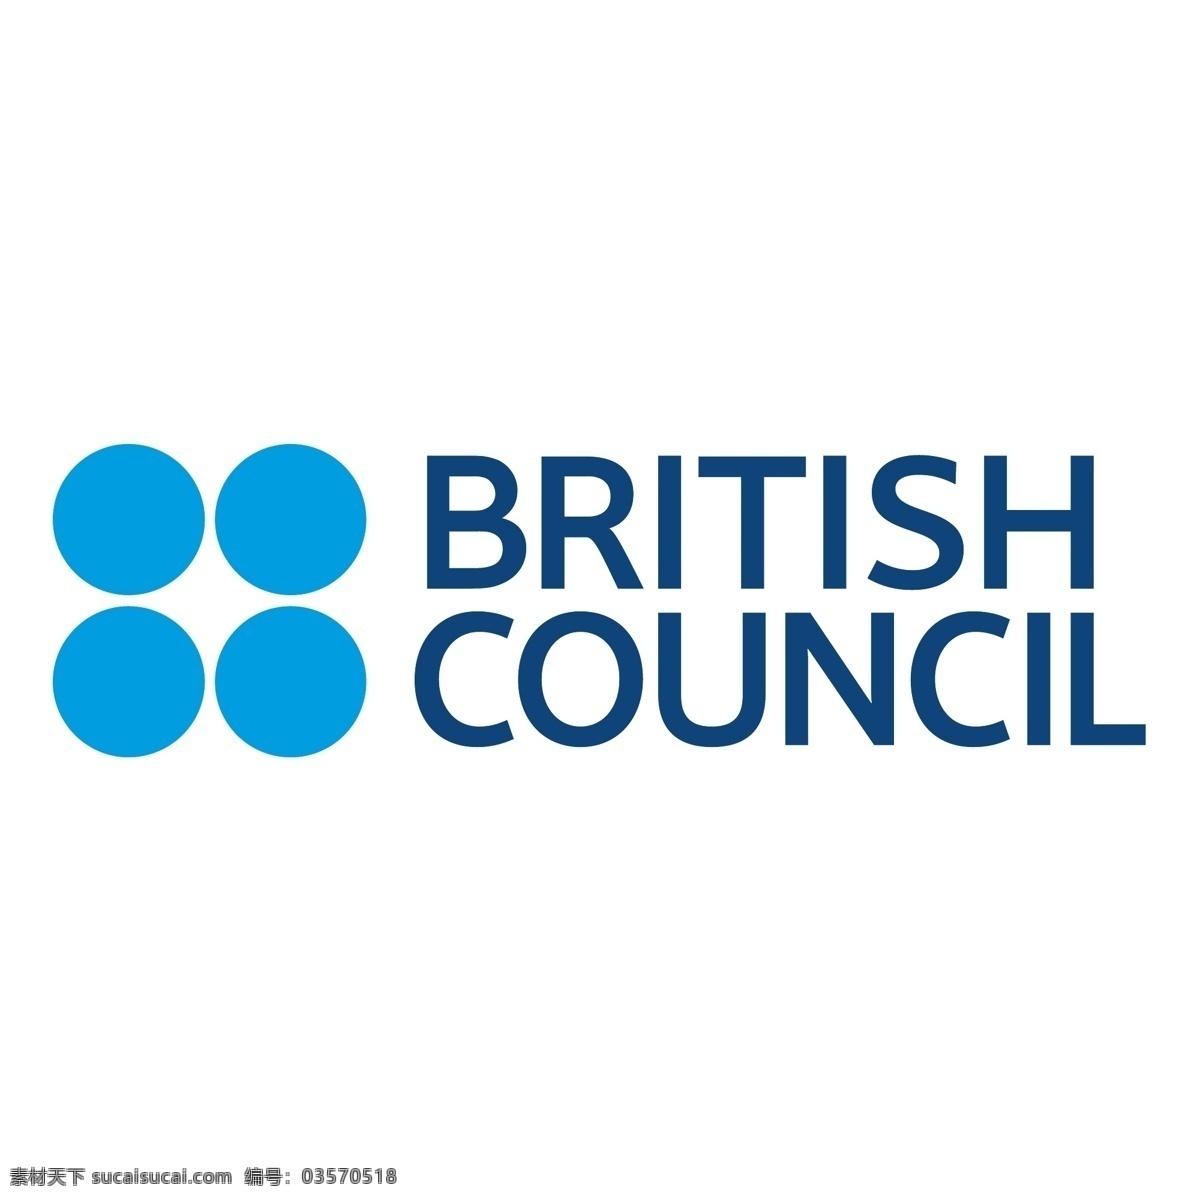 英国文化委员会 标志 英国的 英国议会 委员会 英国 文化 协会 矢量 logo 向量 艺术 理事会 免费 矢量图 建筑家居